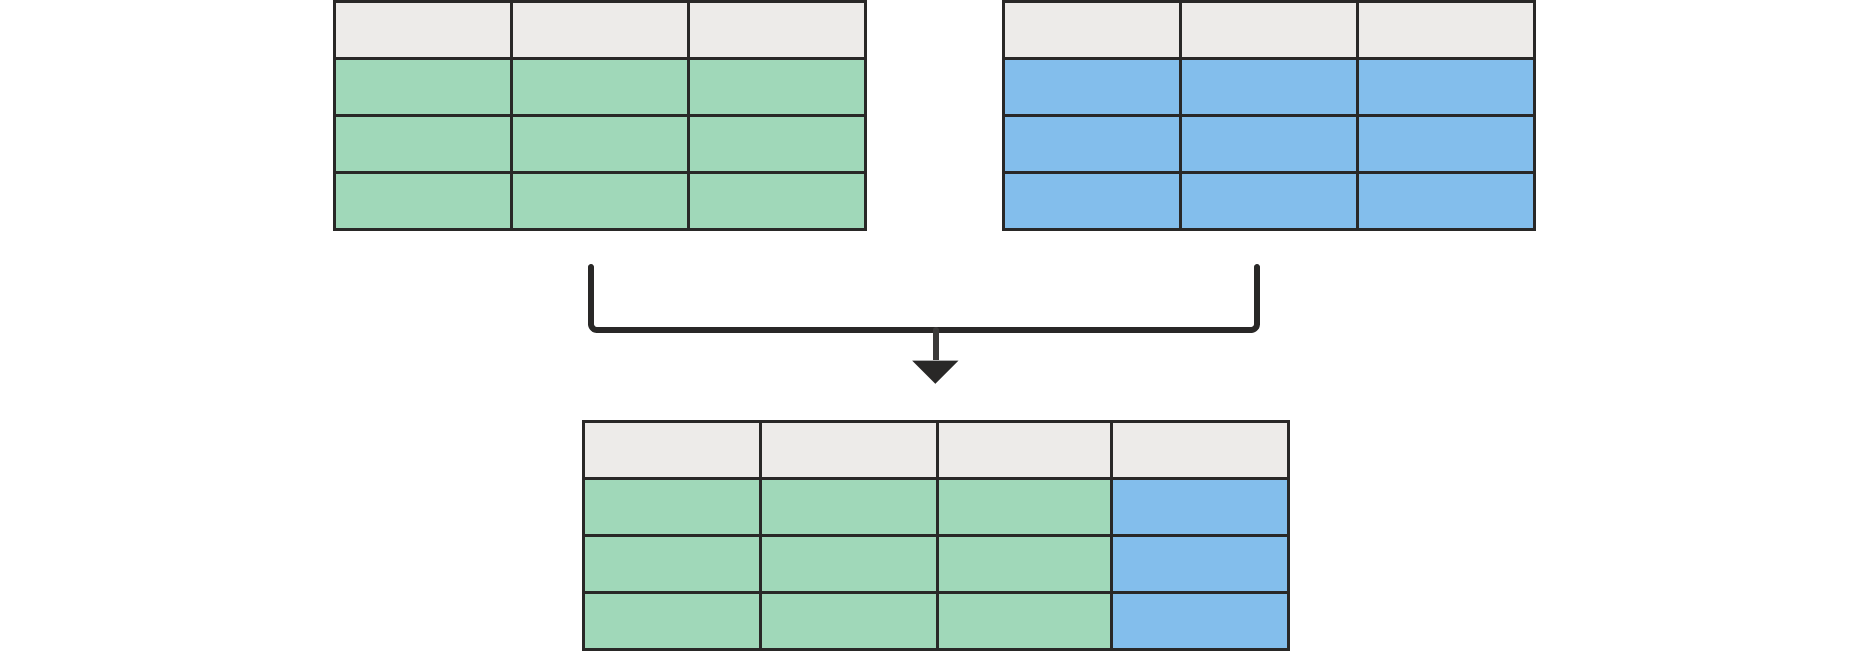 Diagram przedstawiający dwie puste tabele u góry scalone z tabelą u dołu ze wszystkimi kolumnami z lewej tabeli i jedną z prawej tabeli.